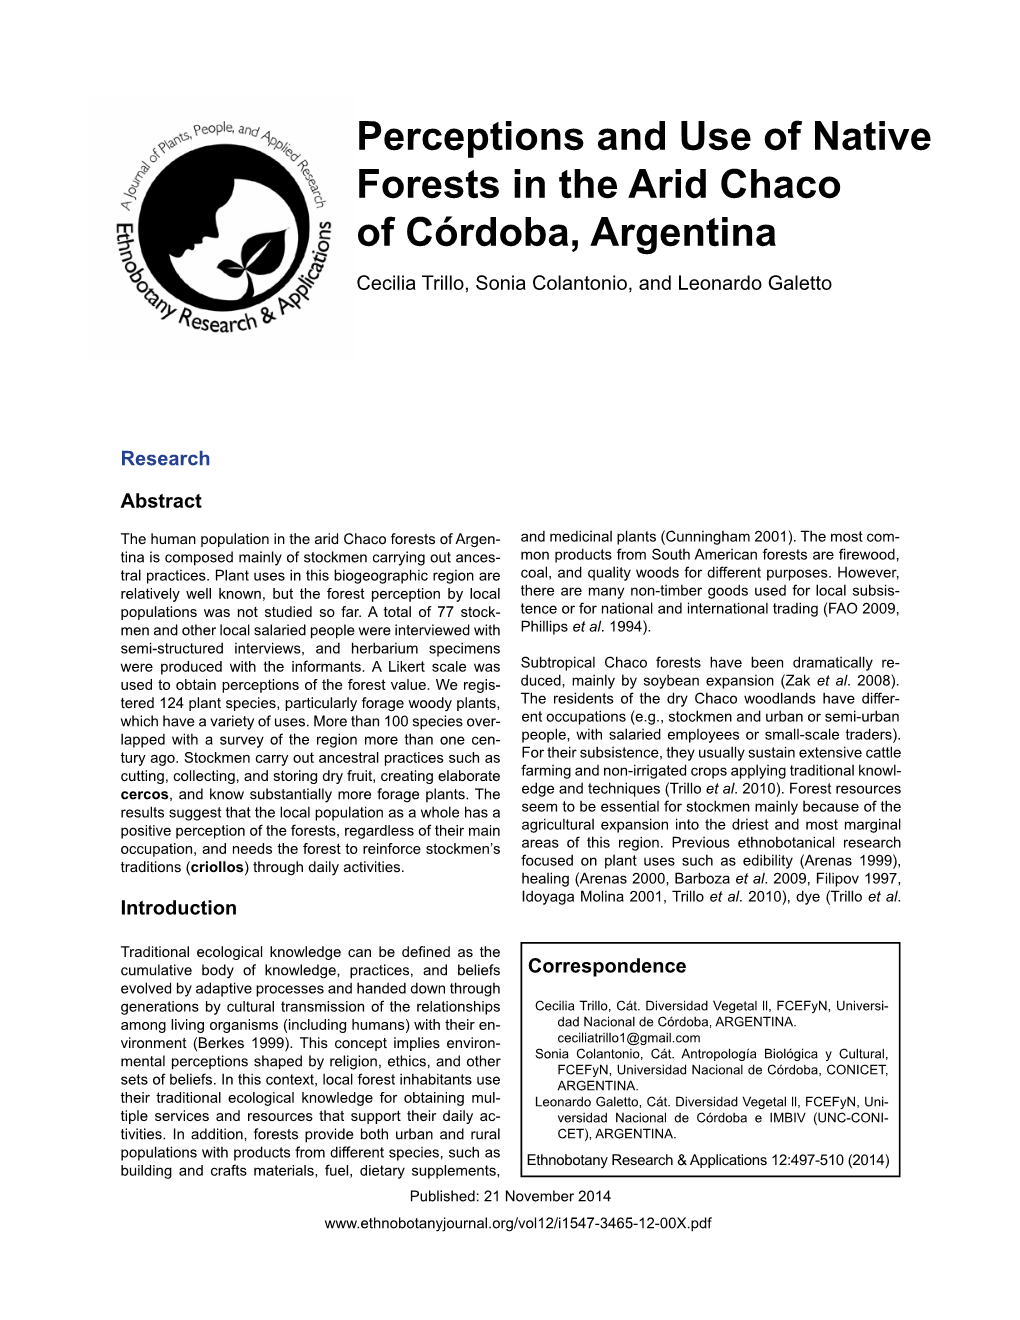 Perceptions and Use of Native Forests in the Arid Chaco of Córdoba, Argentina Cecilia Trillo, Sonia Colantonio, and Leonardo Galetto